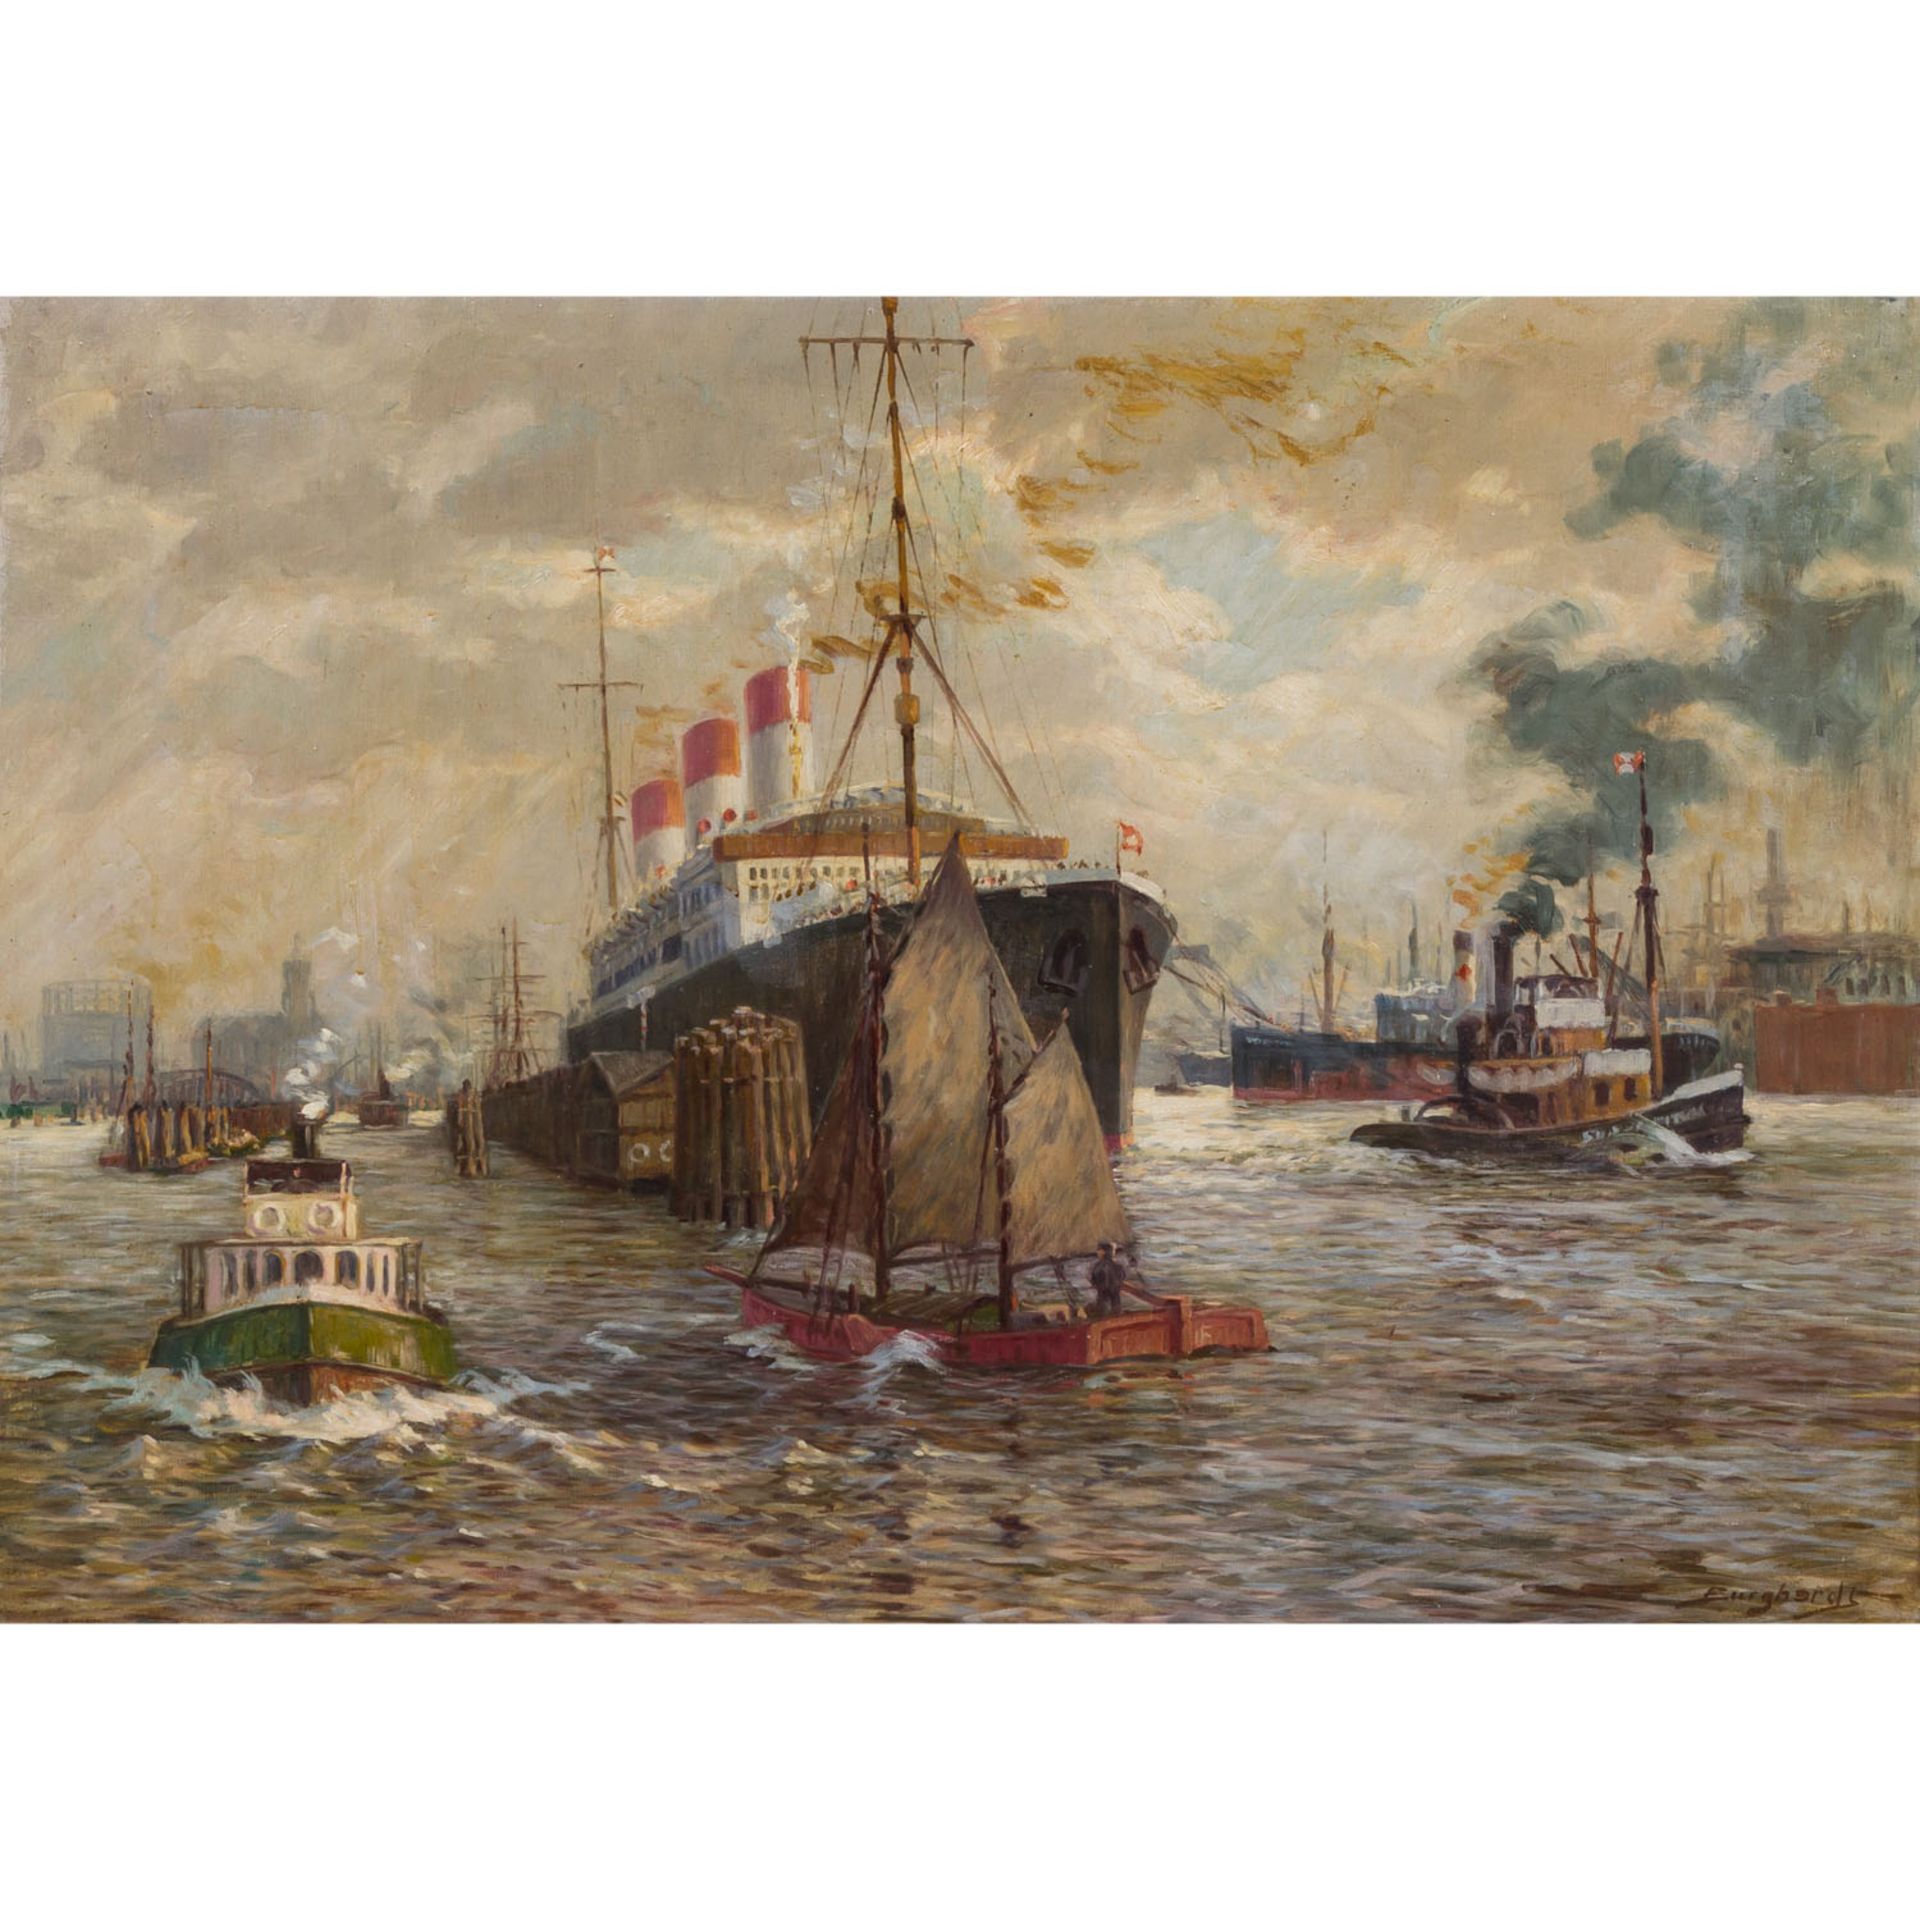 BURGHARDT, GUSTAV (1890-1970) „Hamburger Hafen“Öl auf Leinwand, u. re. sign. HxB: 70,5/100 cm, mit